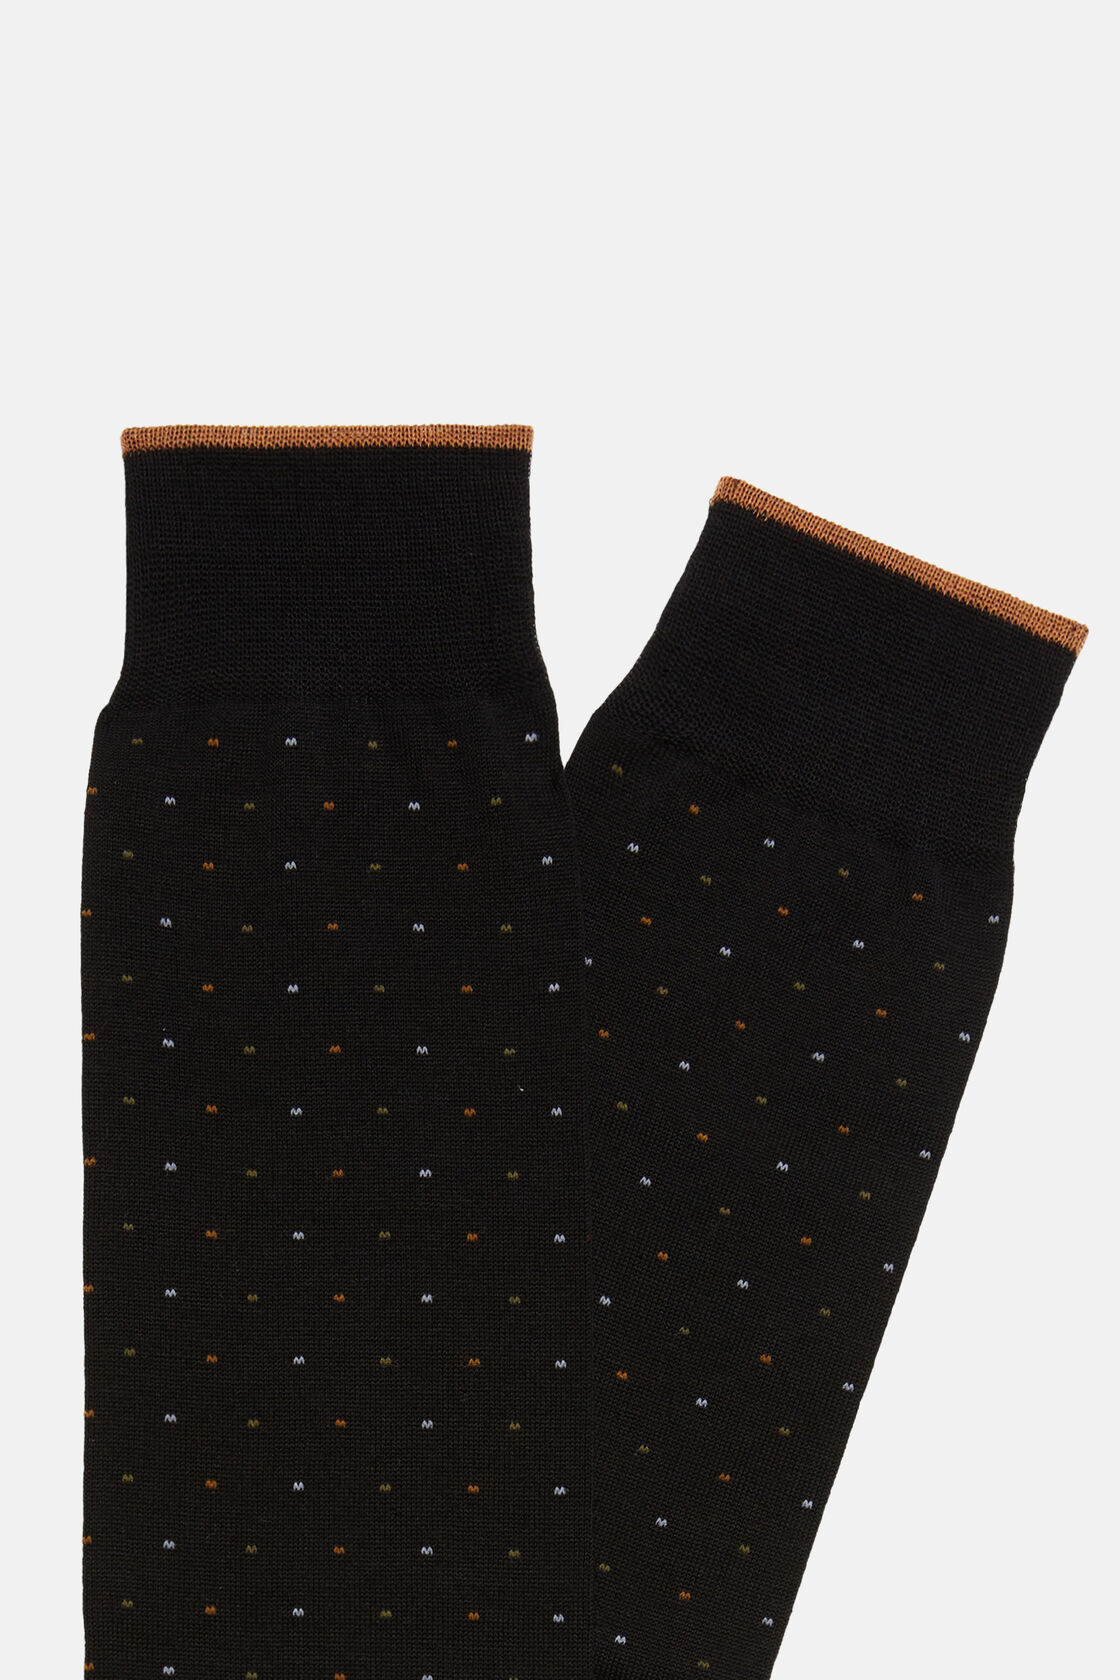 Socken mit Mikropunktemuster aus Baumwolle, Schwarz, hi-res